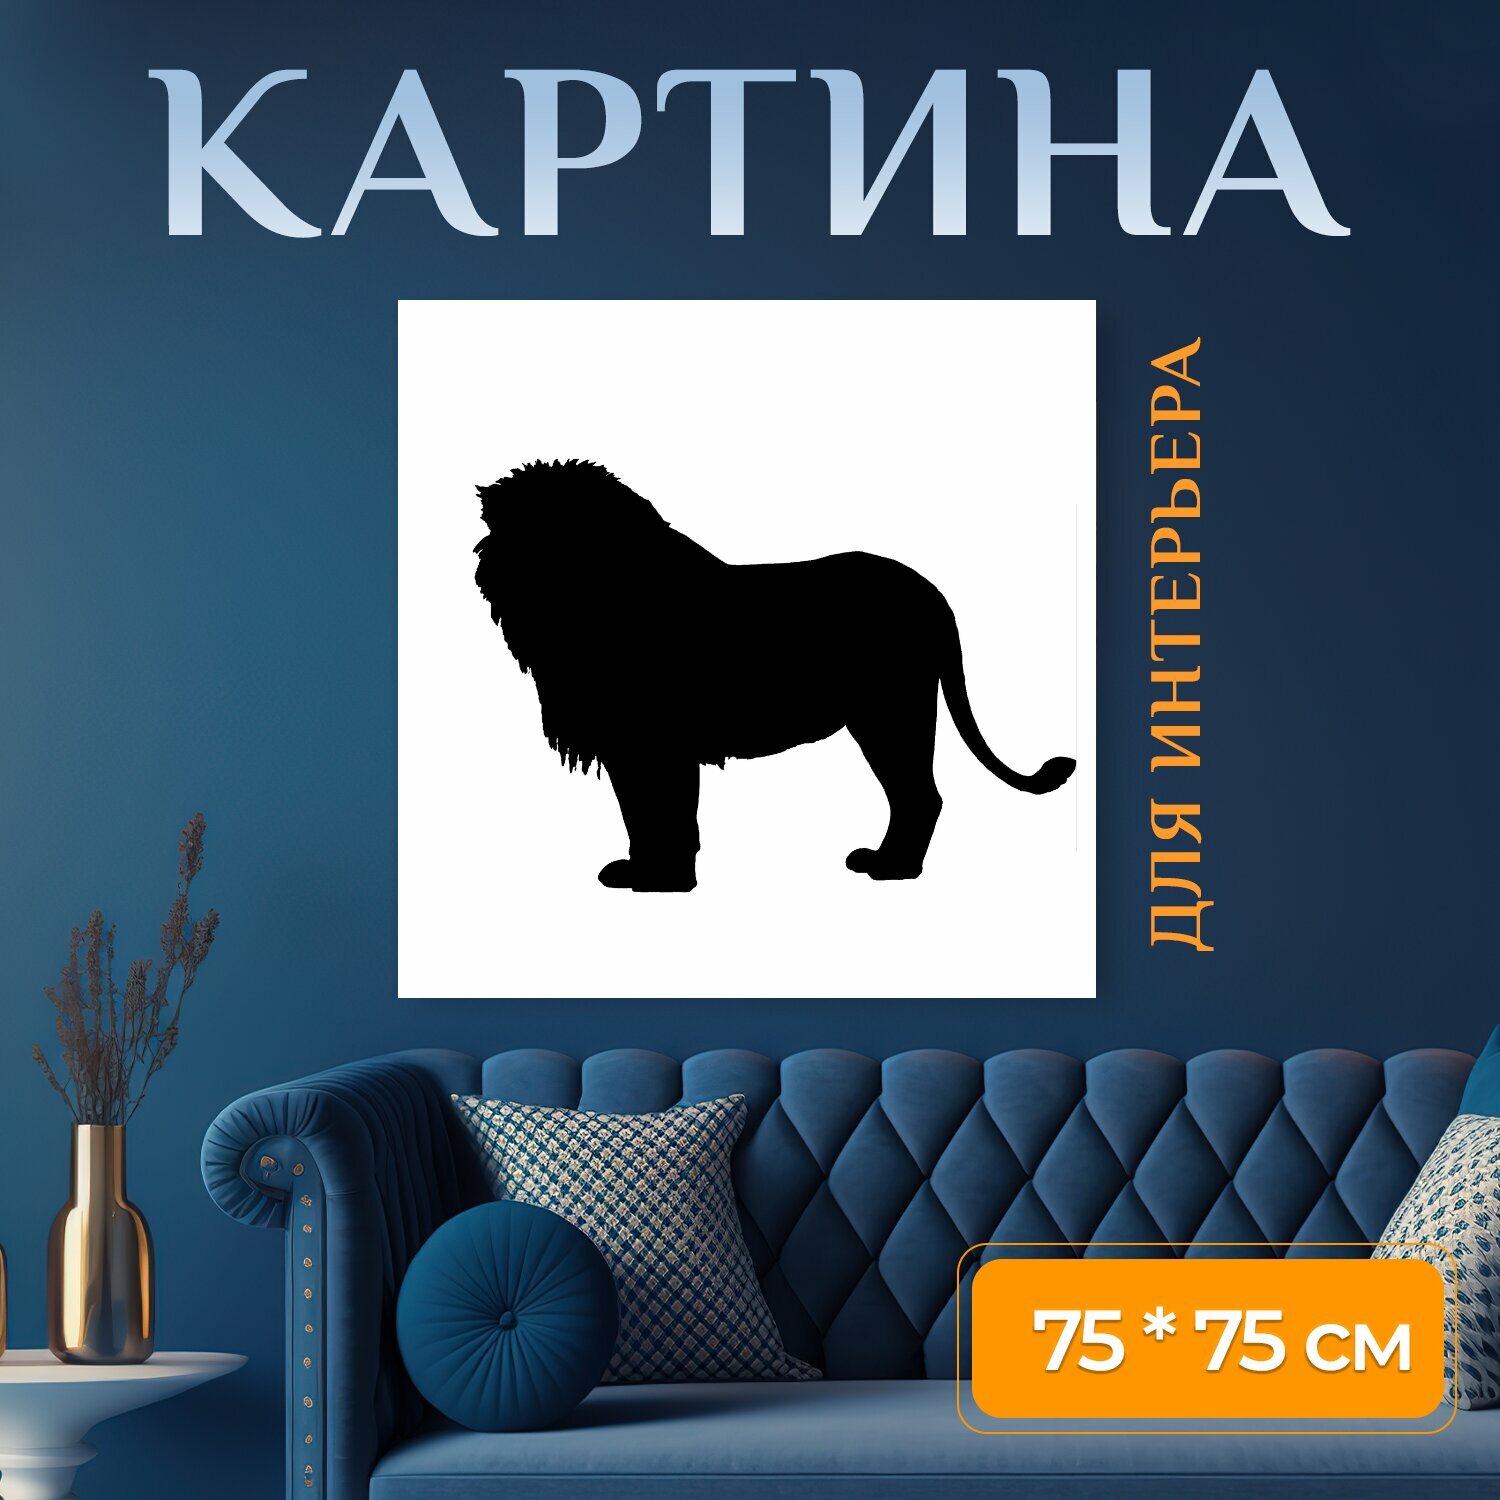 Картина на холсте "Лев, король, животное" на подрамнике 75х75 см. для интерьера